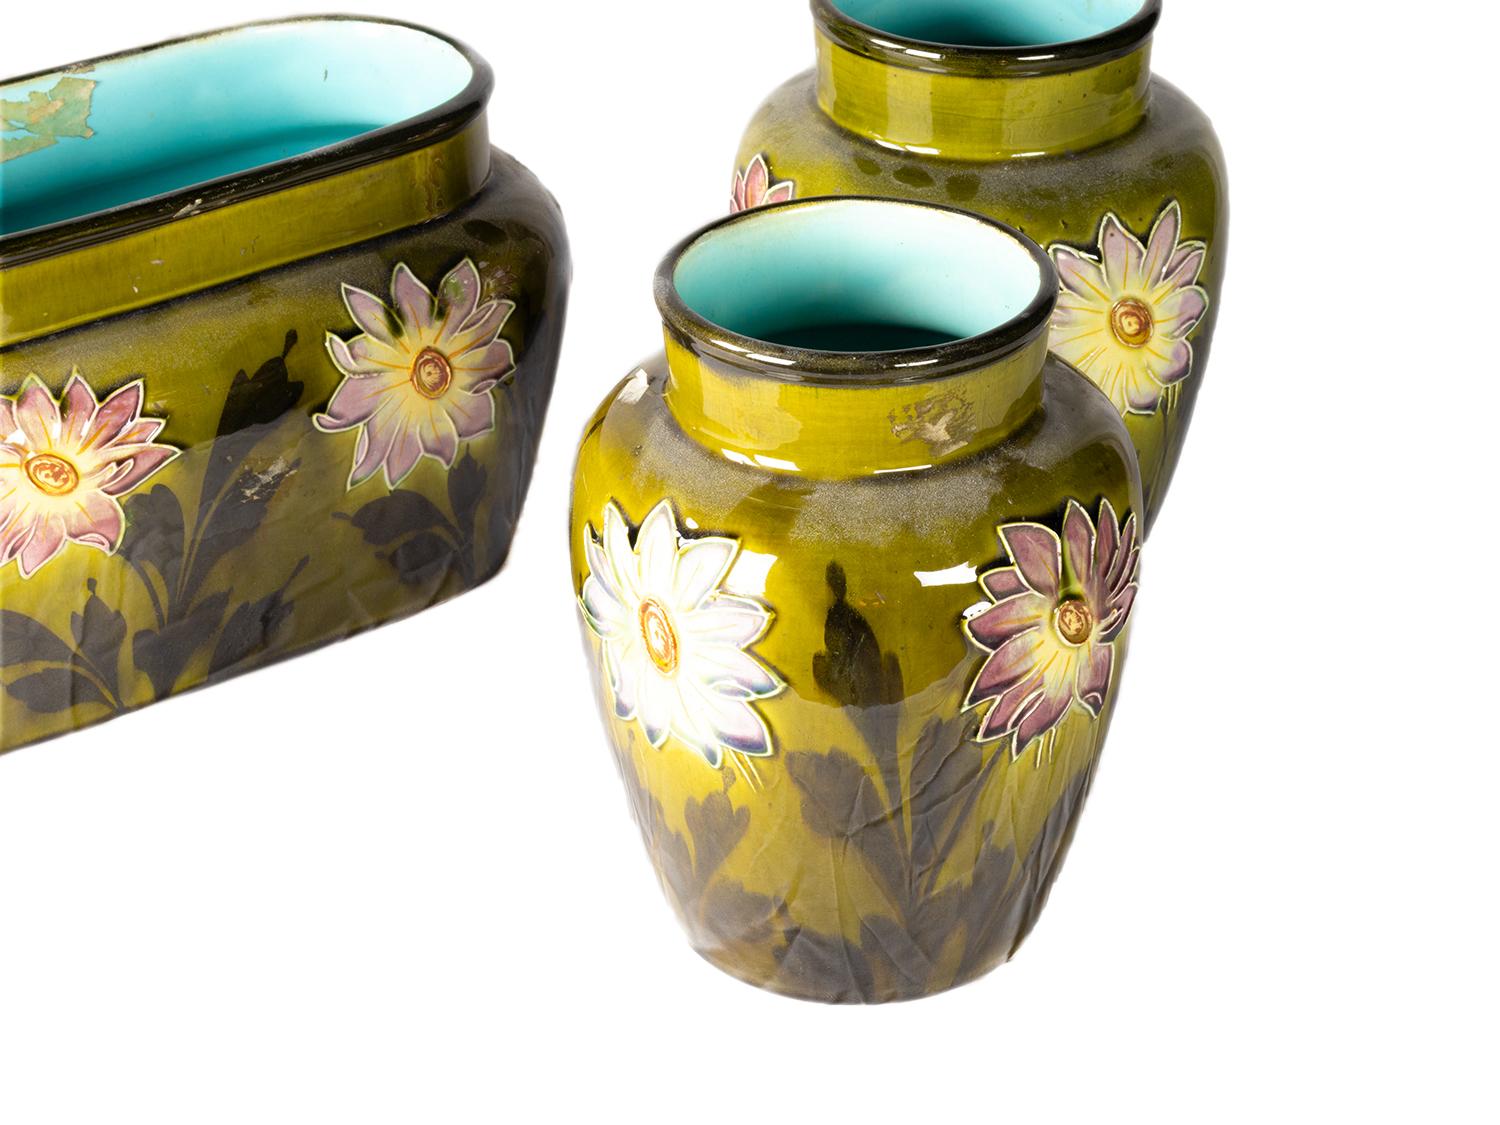 Ein dreiteiliges Set bestehend aus einem Übertopf und zwei Vasen aus olivgrüner Keramik, verziert mit Blumen im Barbotine-Stil, mit Interieur aus bläulich-grüner Keramik.
B FRANCE 50_2